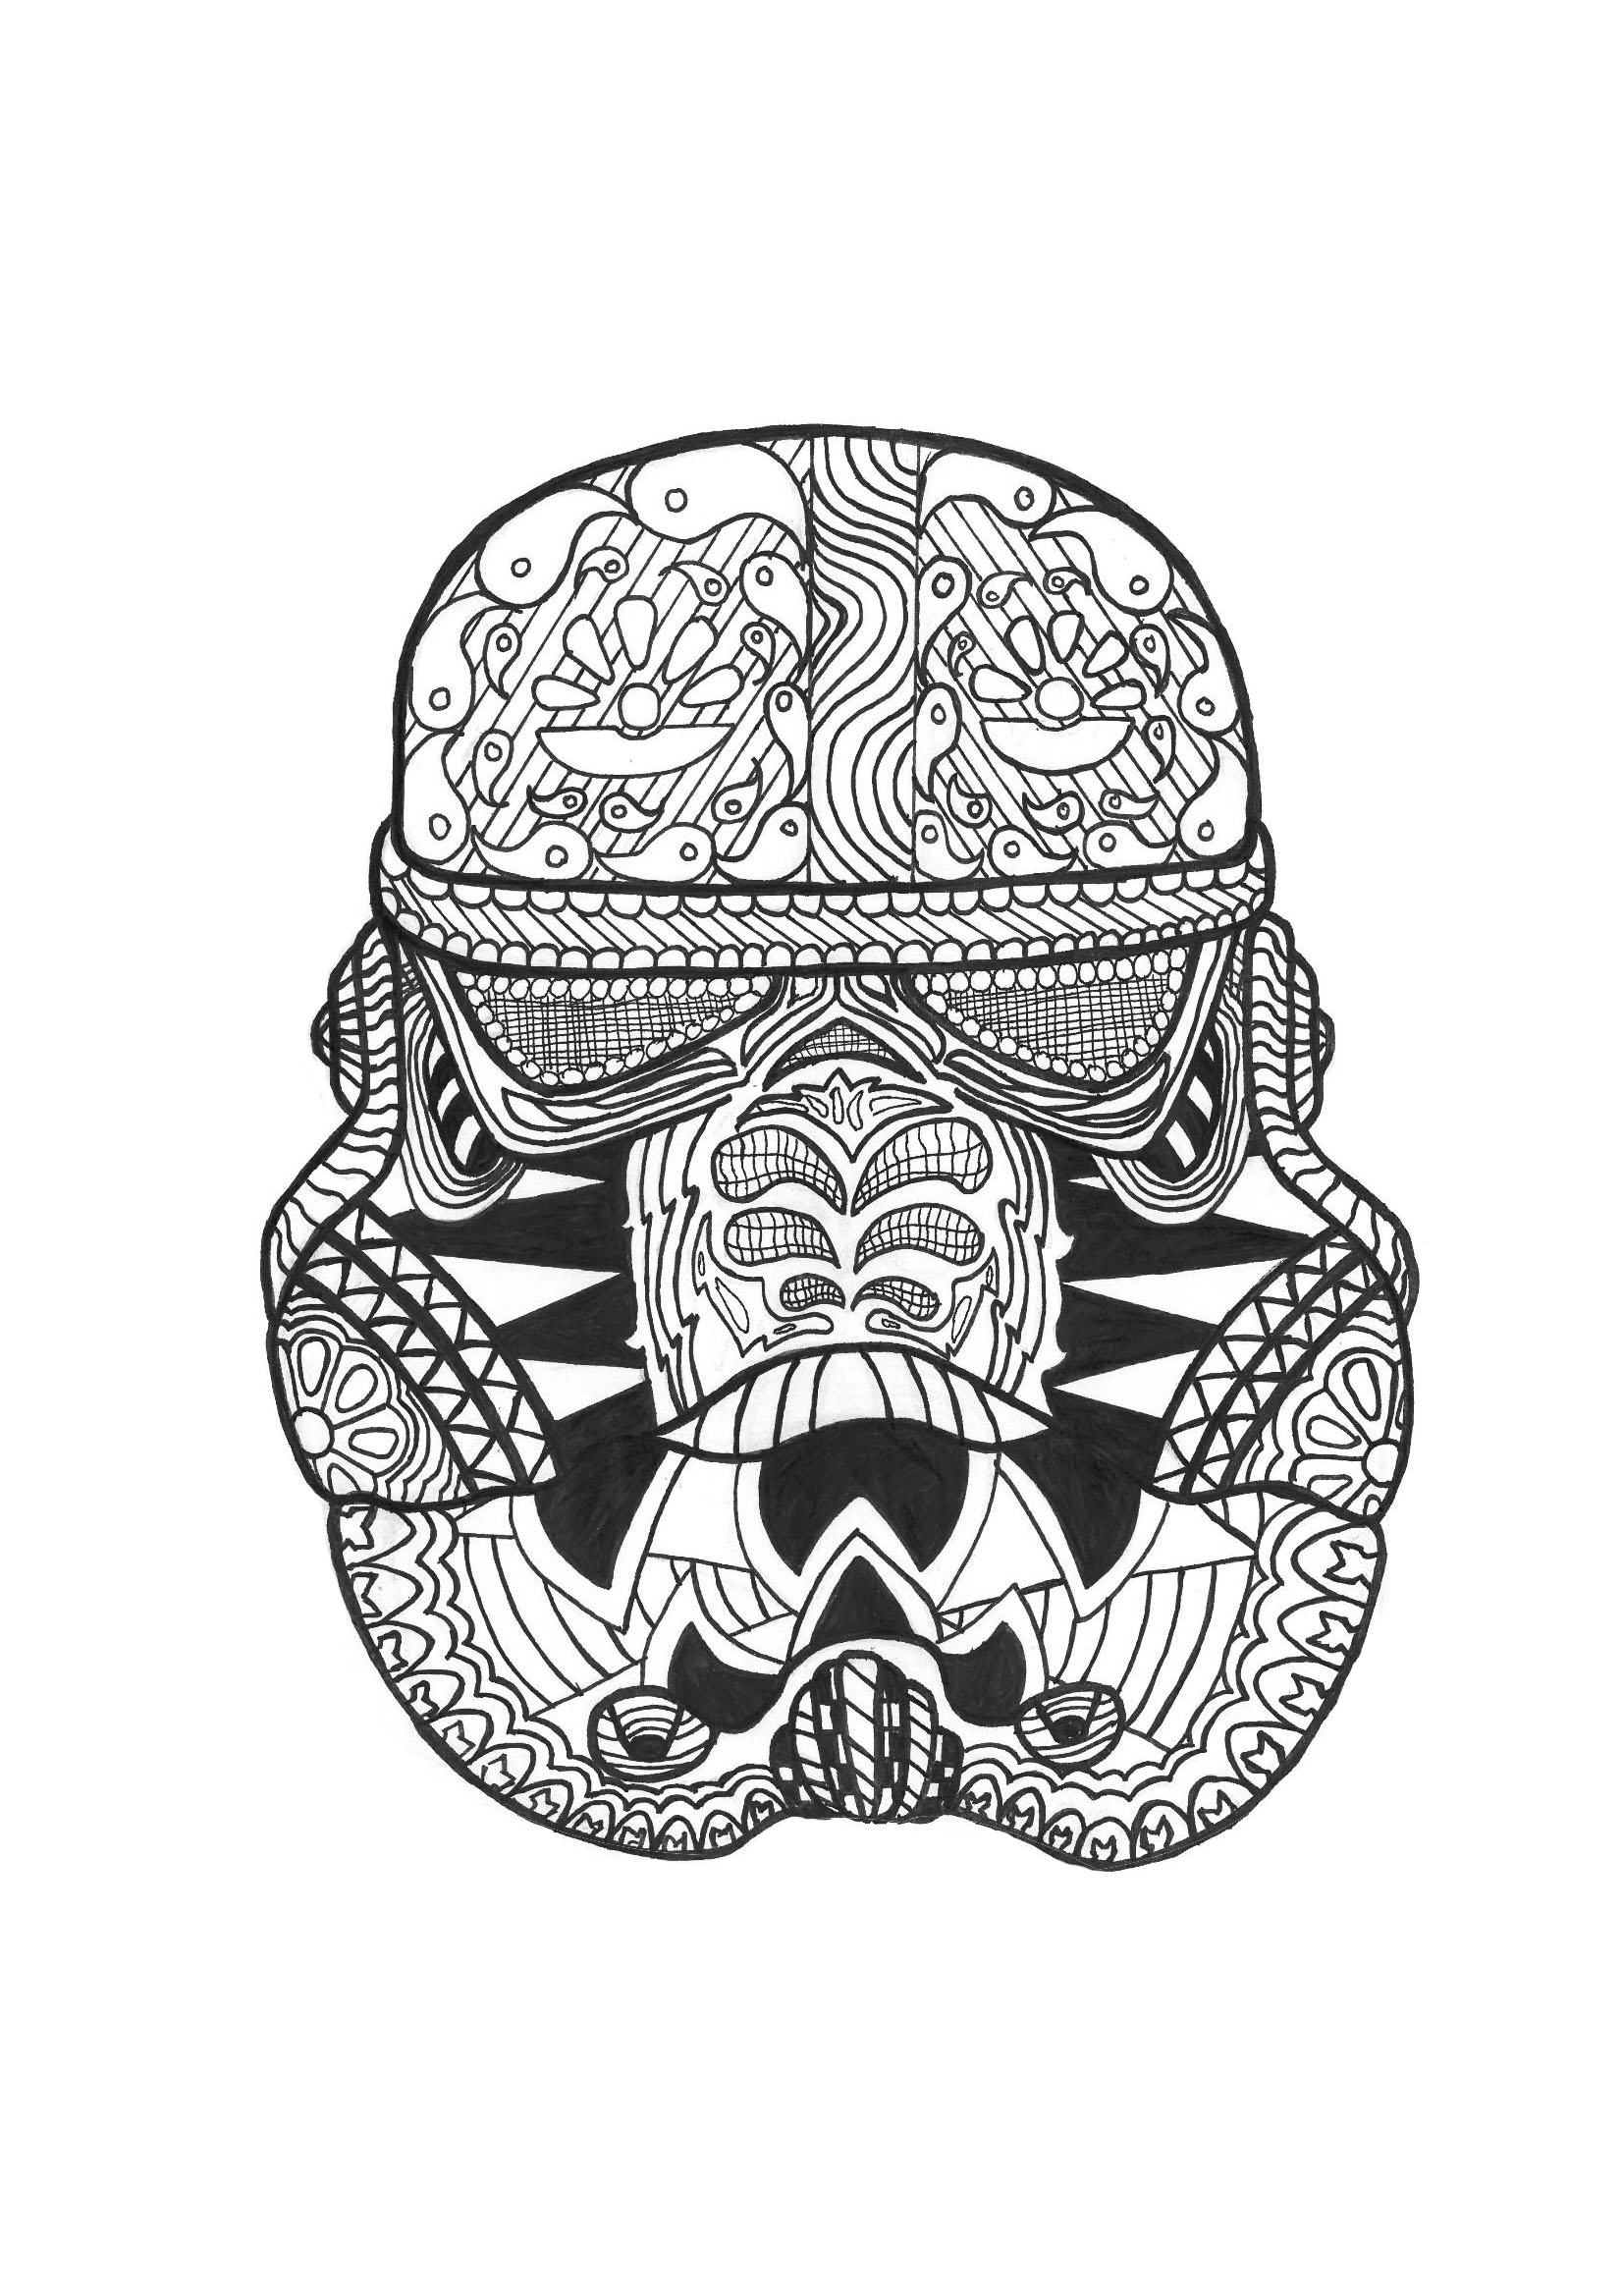 Ausmalbild eines Stormtrooper-Helms (aus Star Wars), Künstler : Allan